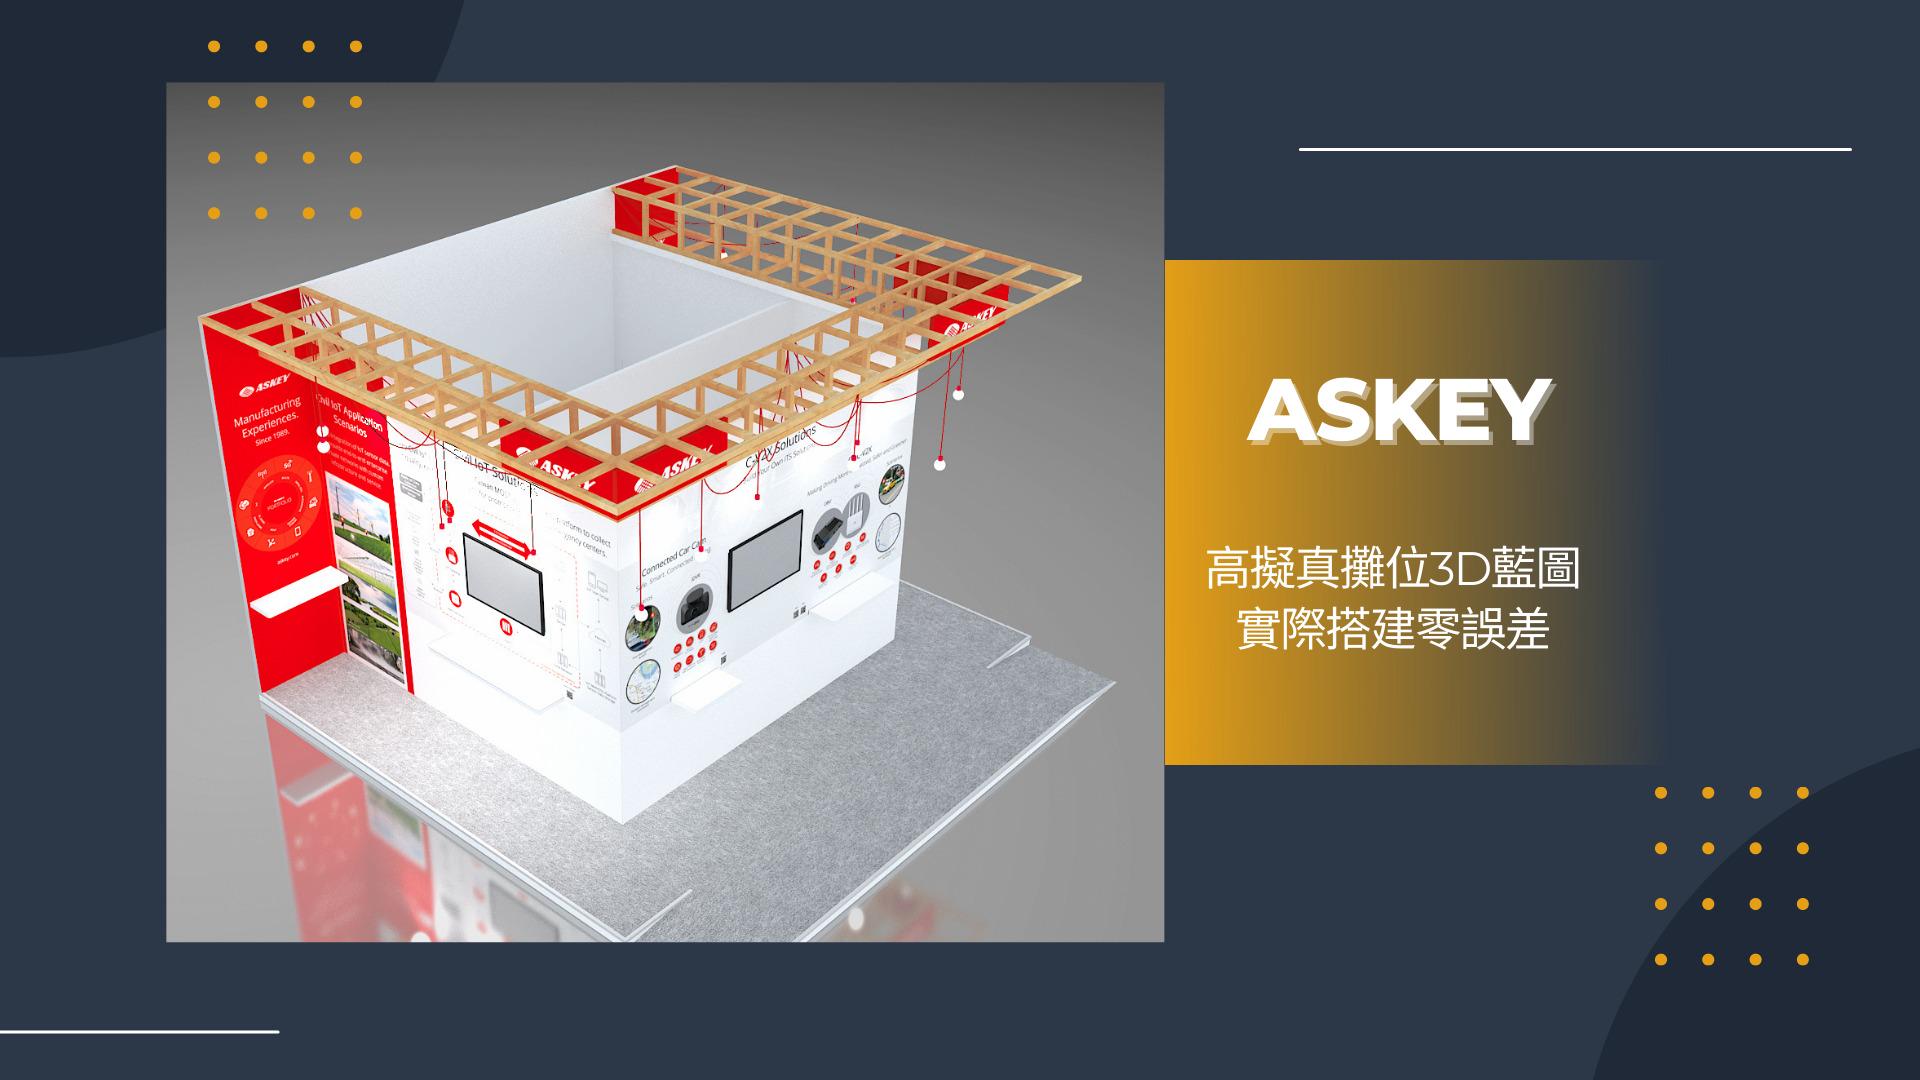 Askey, 王一設計, 亞旭電腦, 展場設計, 攤位設計, MWC2022